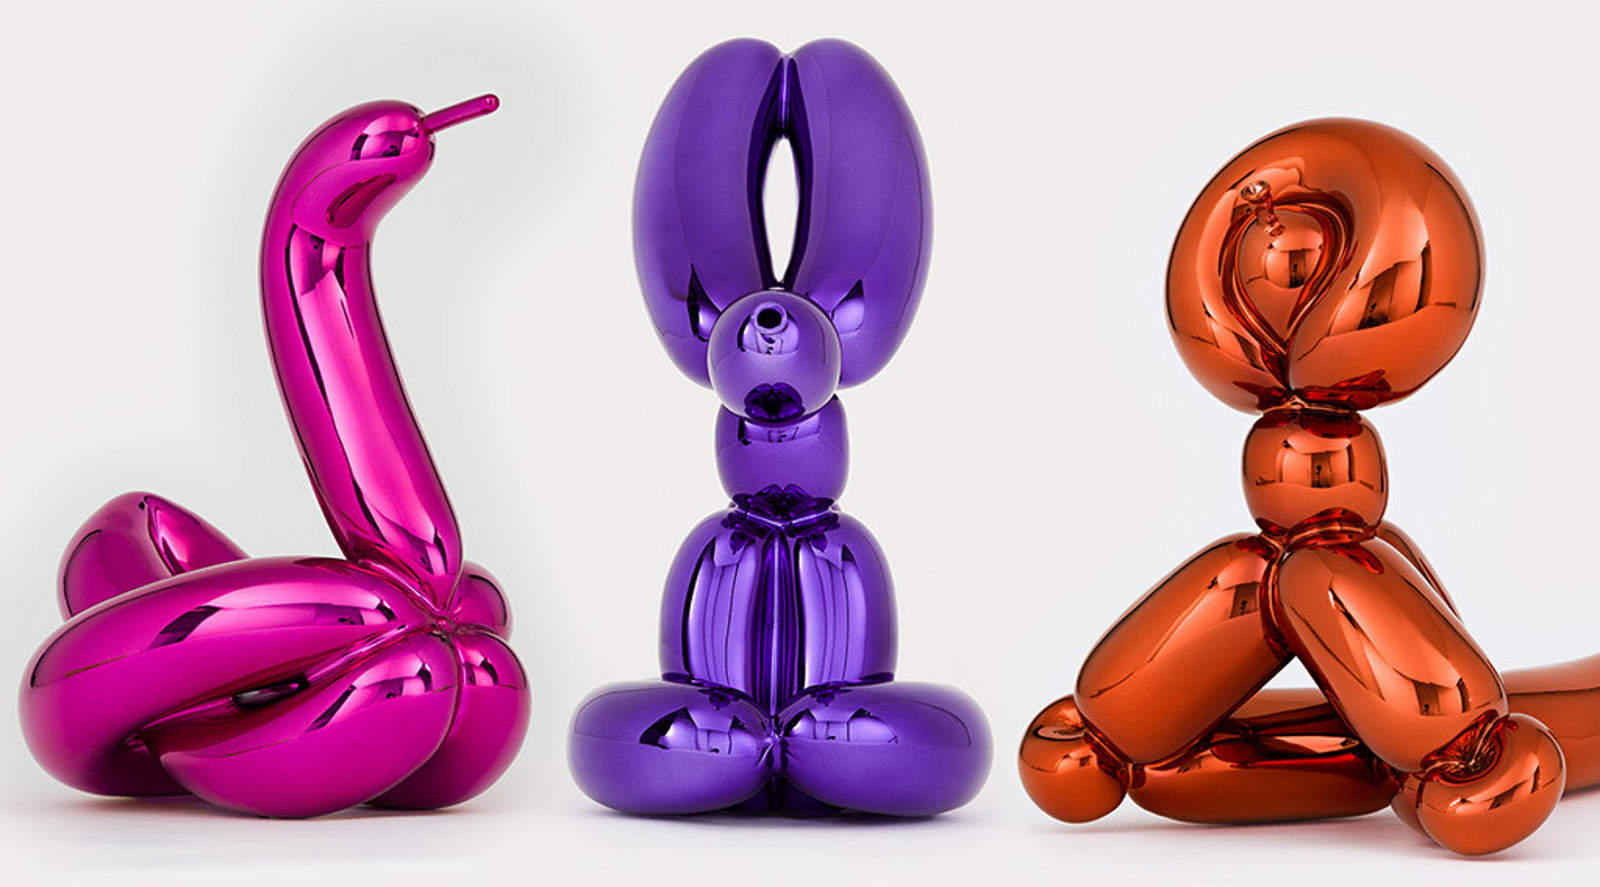 Jeff Koons Balloon Animals Kunstwerk